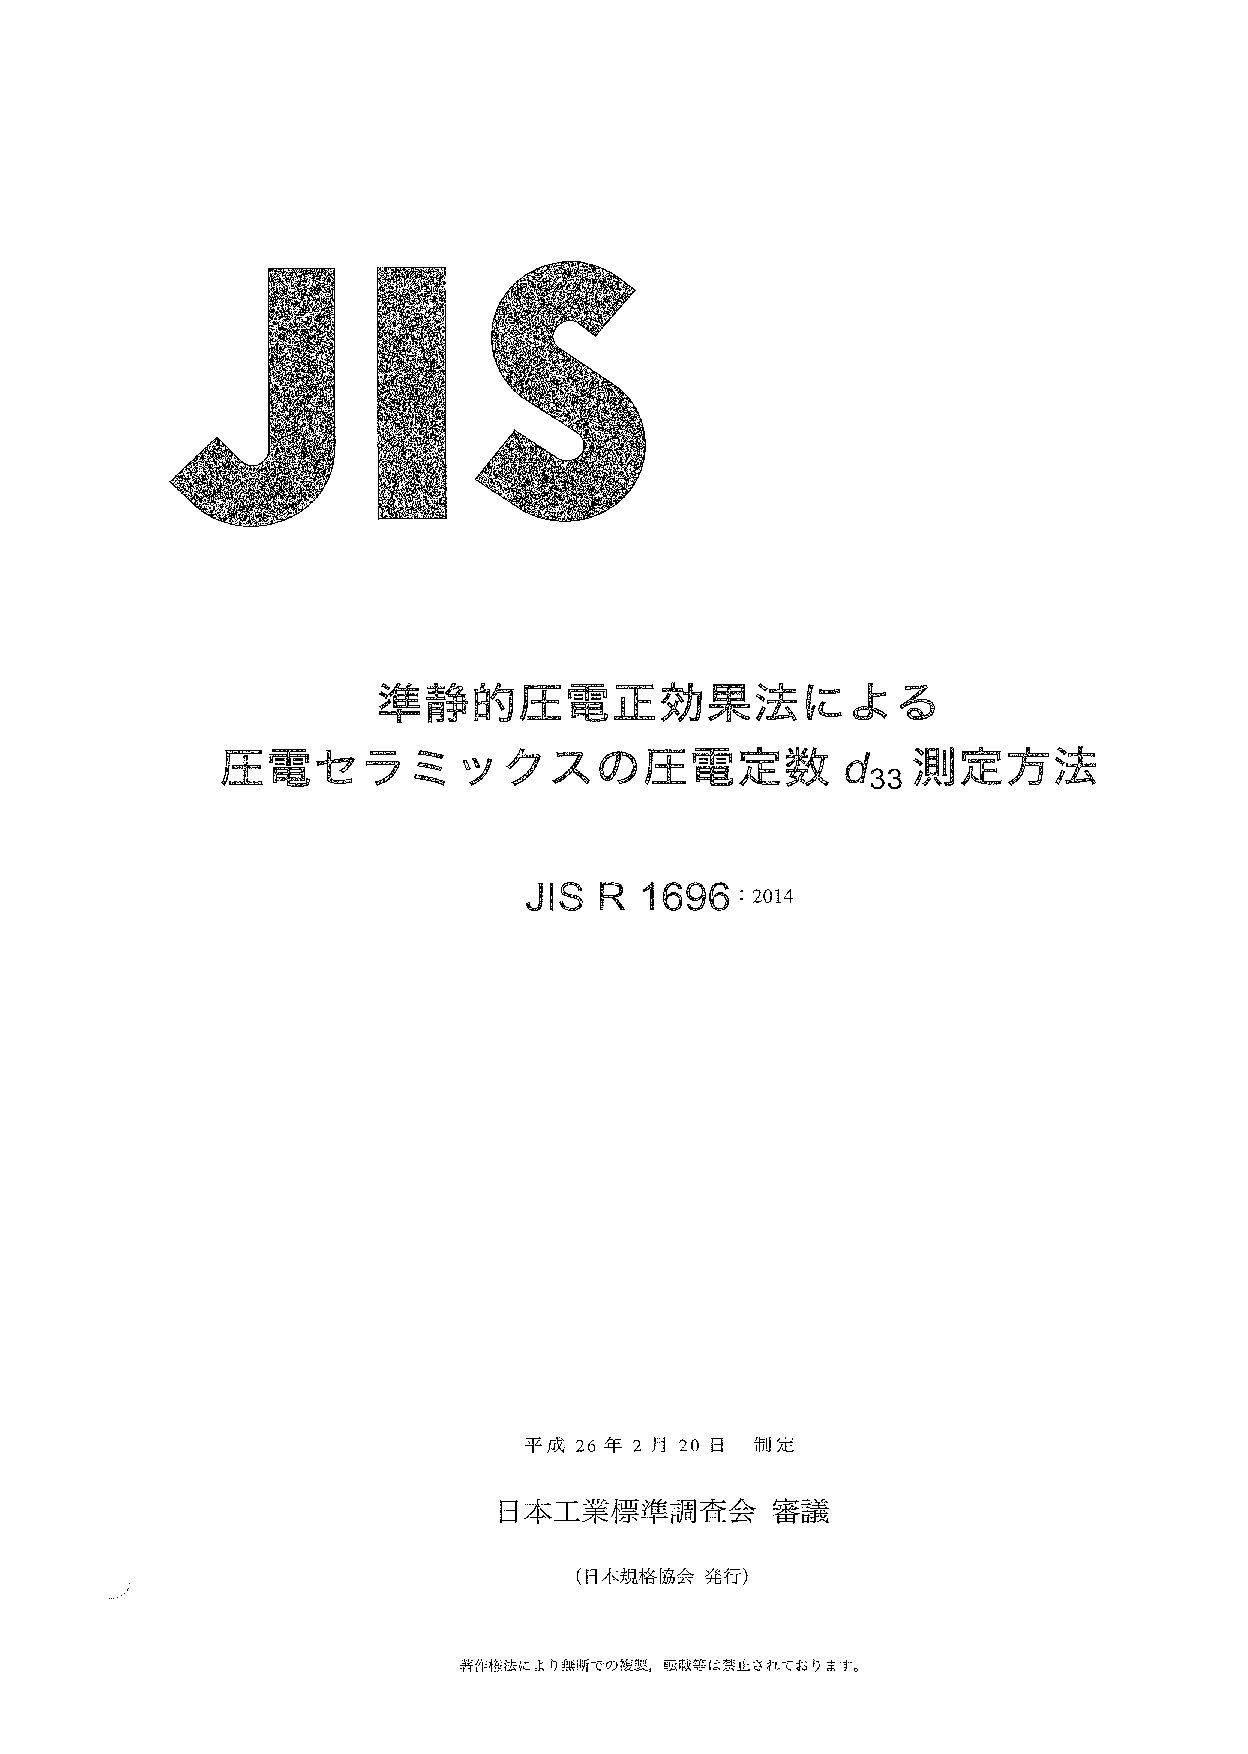 JIS R 1696:2014封面图